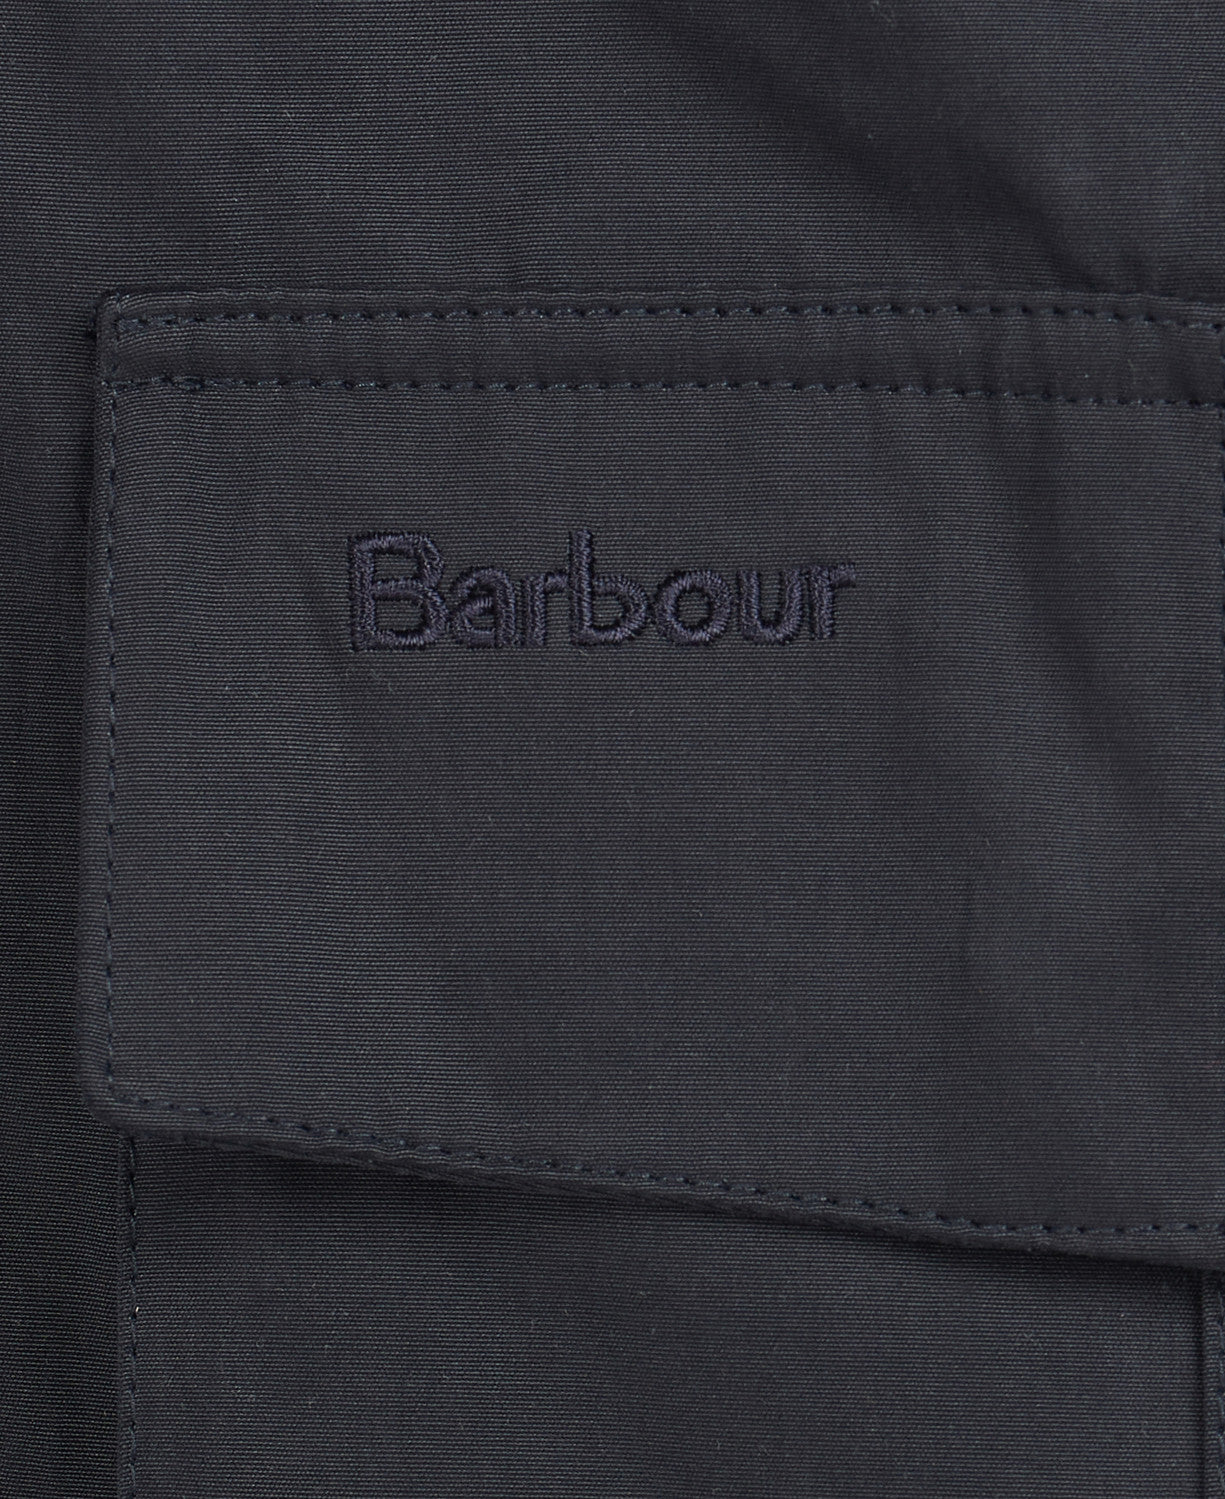 Barbour Sanderling Casual Jacket